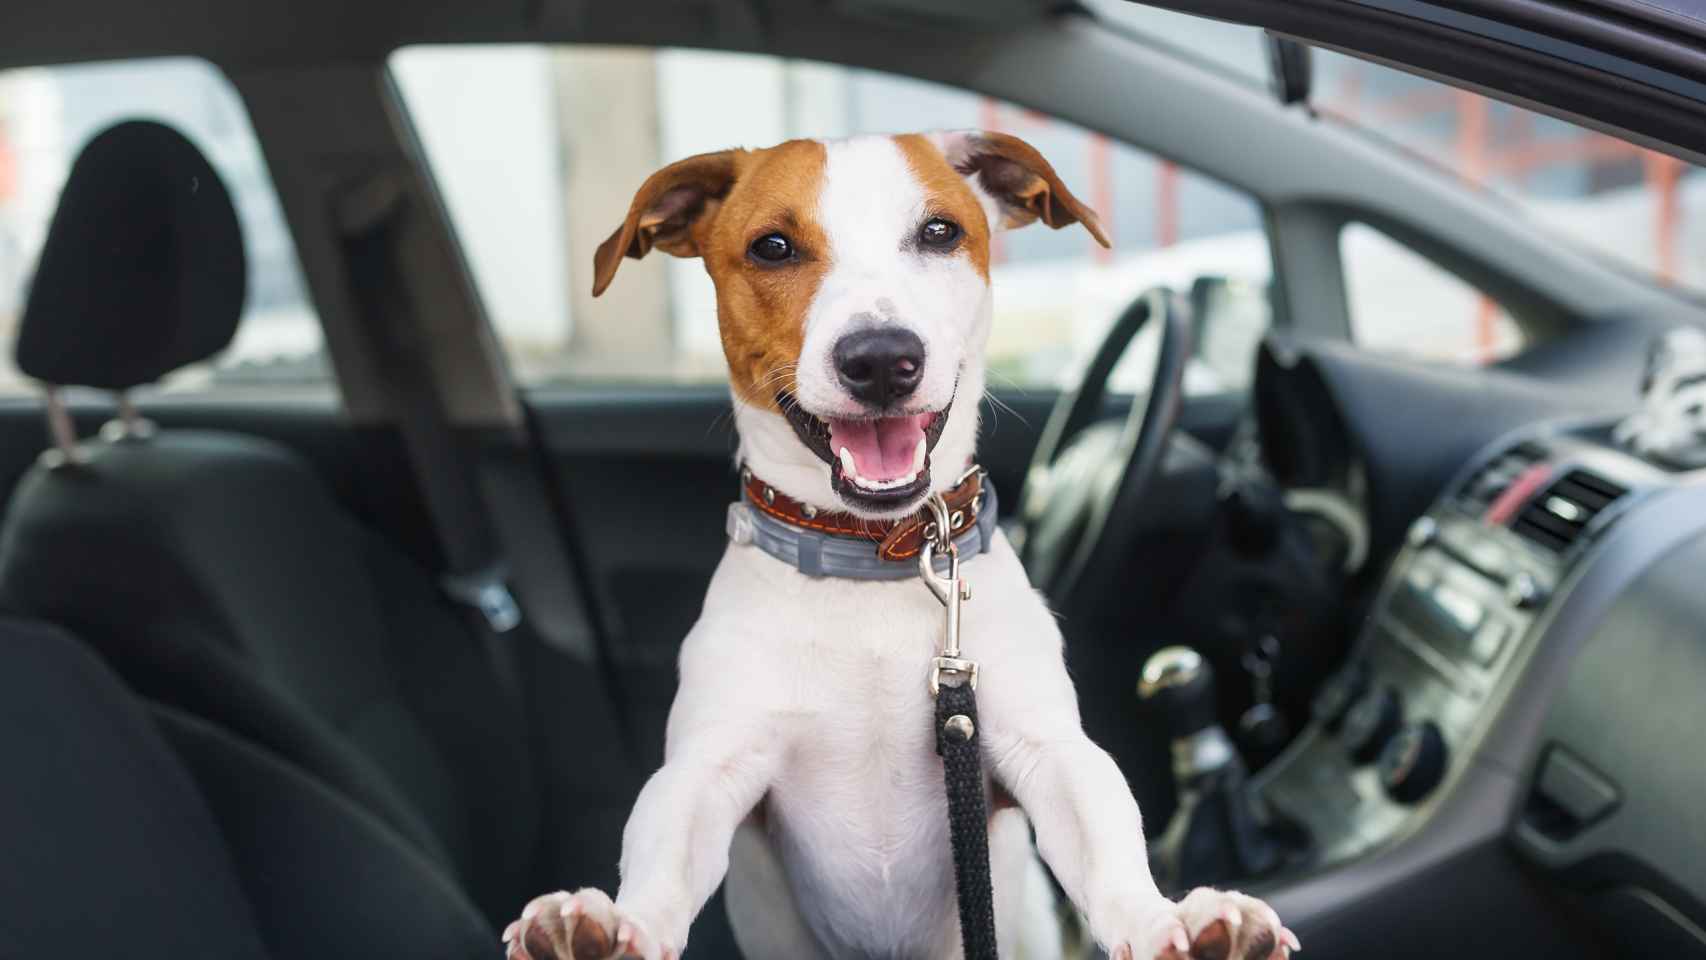 Protectores de vehículo - Viajes - Perros